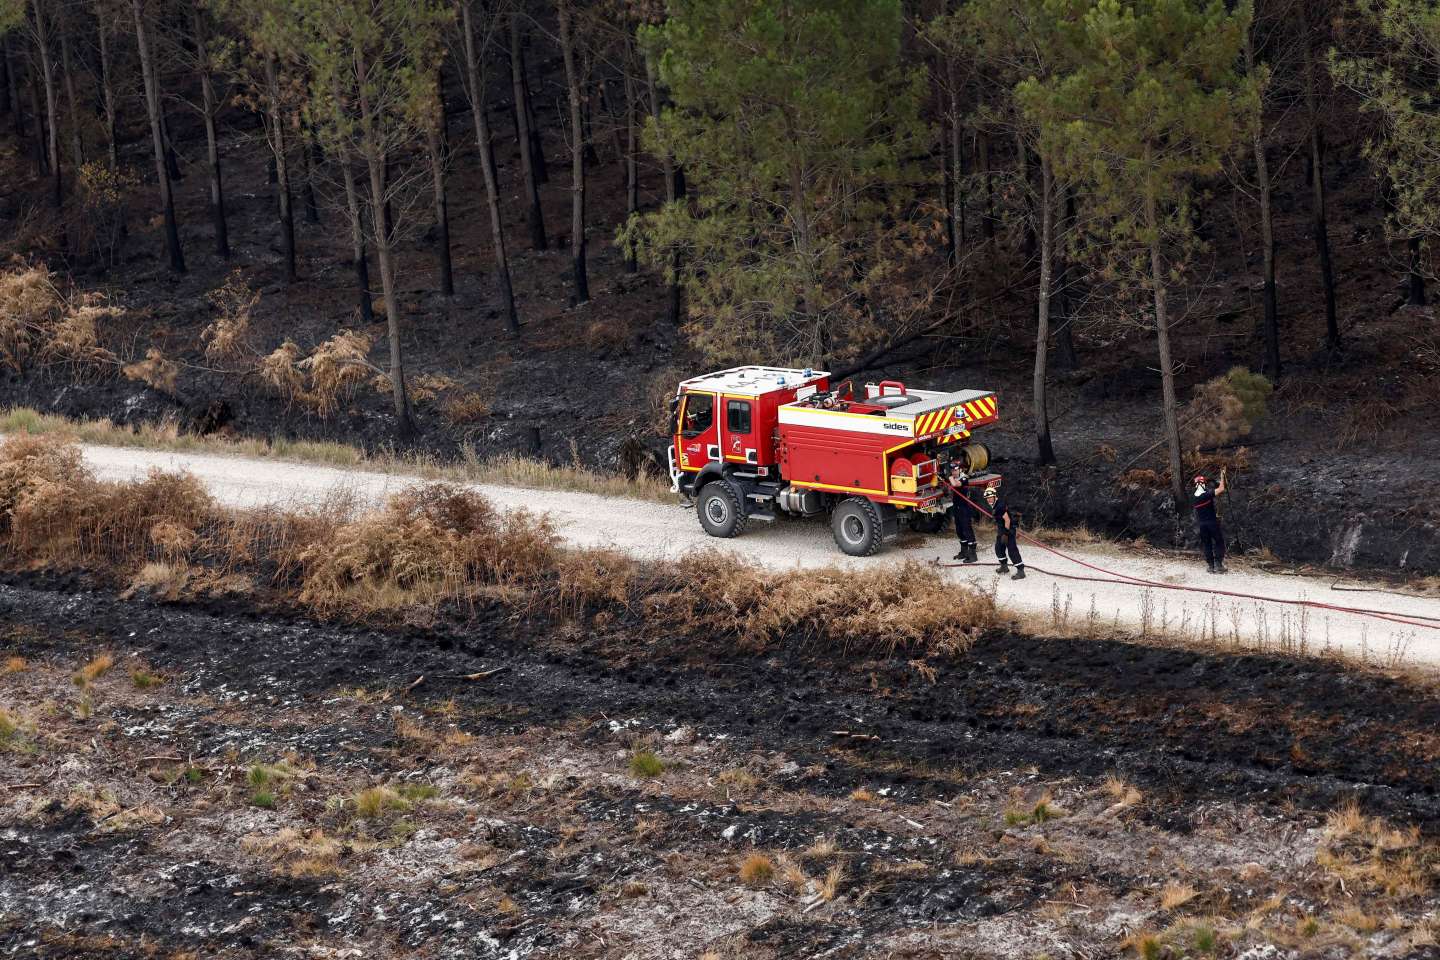 Incendie dans l’Hérault : un feu brûle près de 700 hectares et continue sa progression vers l’est